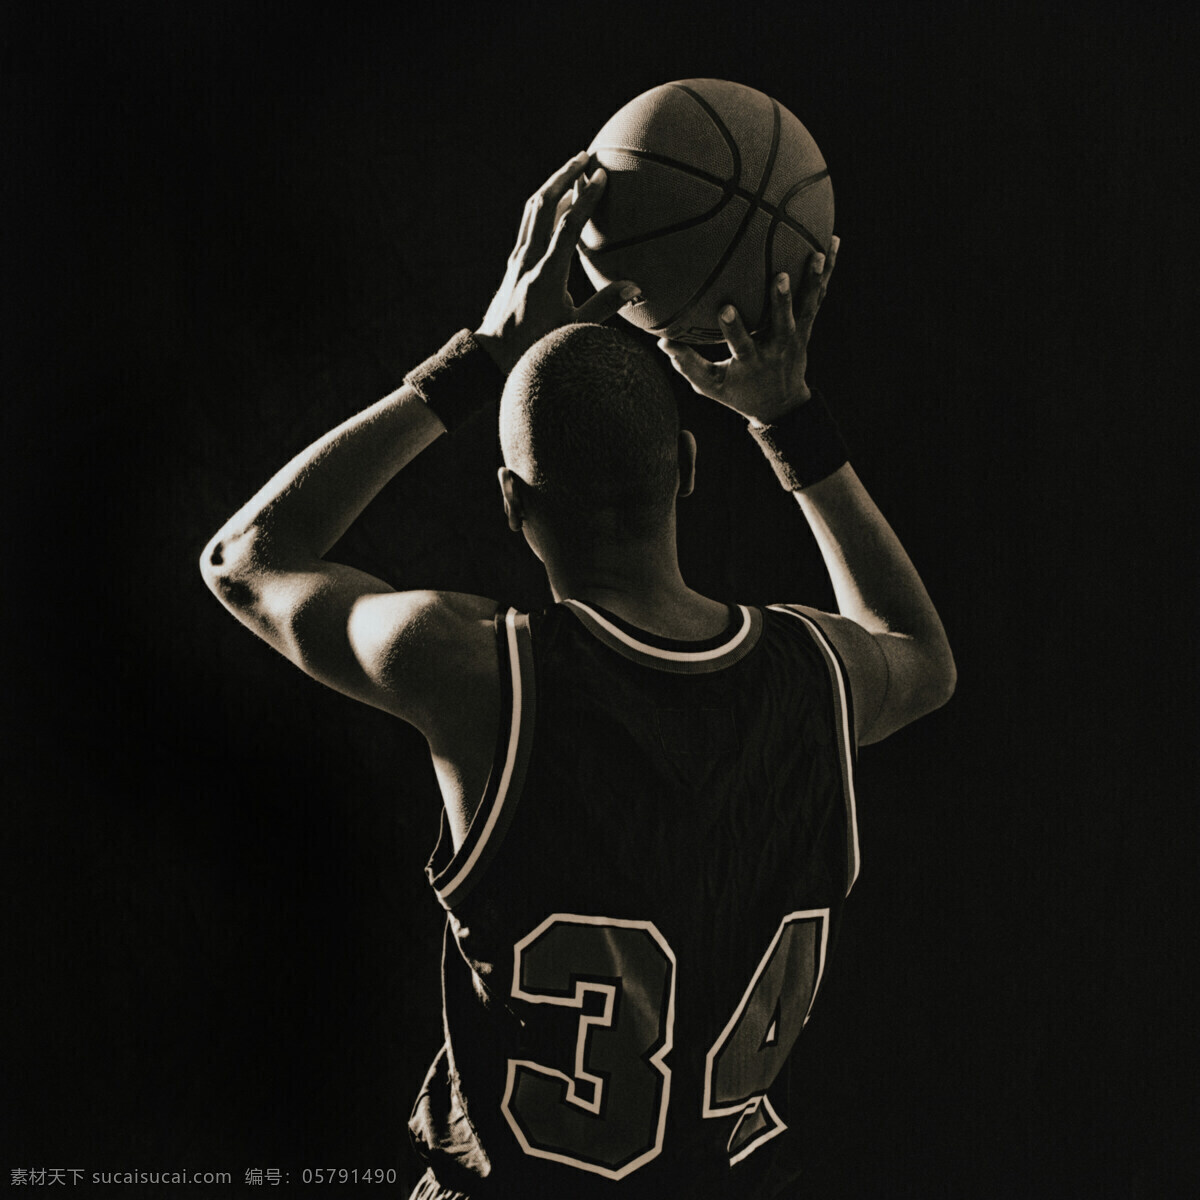 体育运动 篮球 篮球运动 男人 男性 男性男人 人物图库 设计图库 运动员 psd源文件